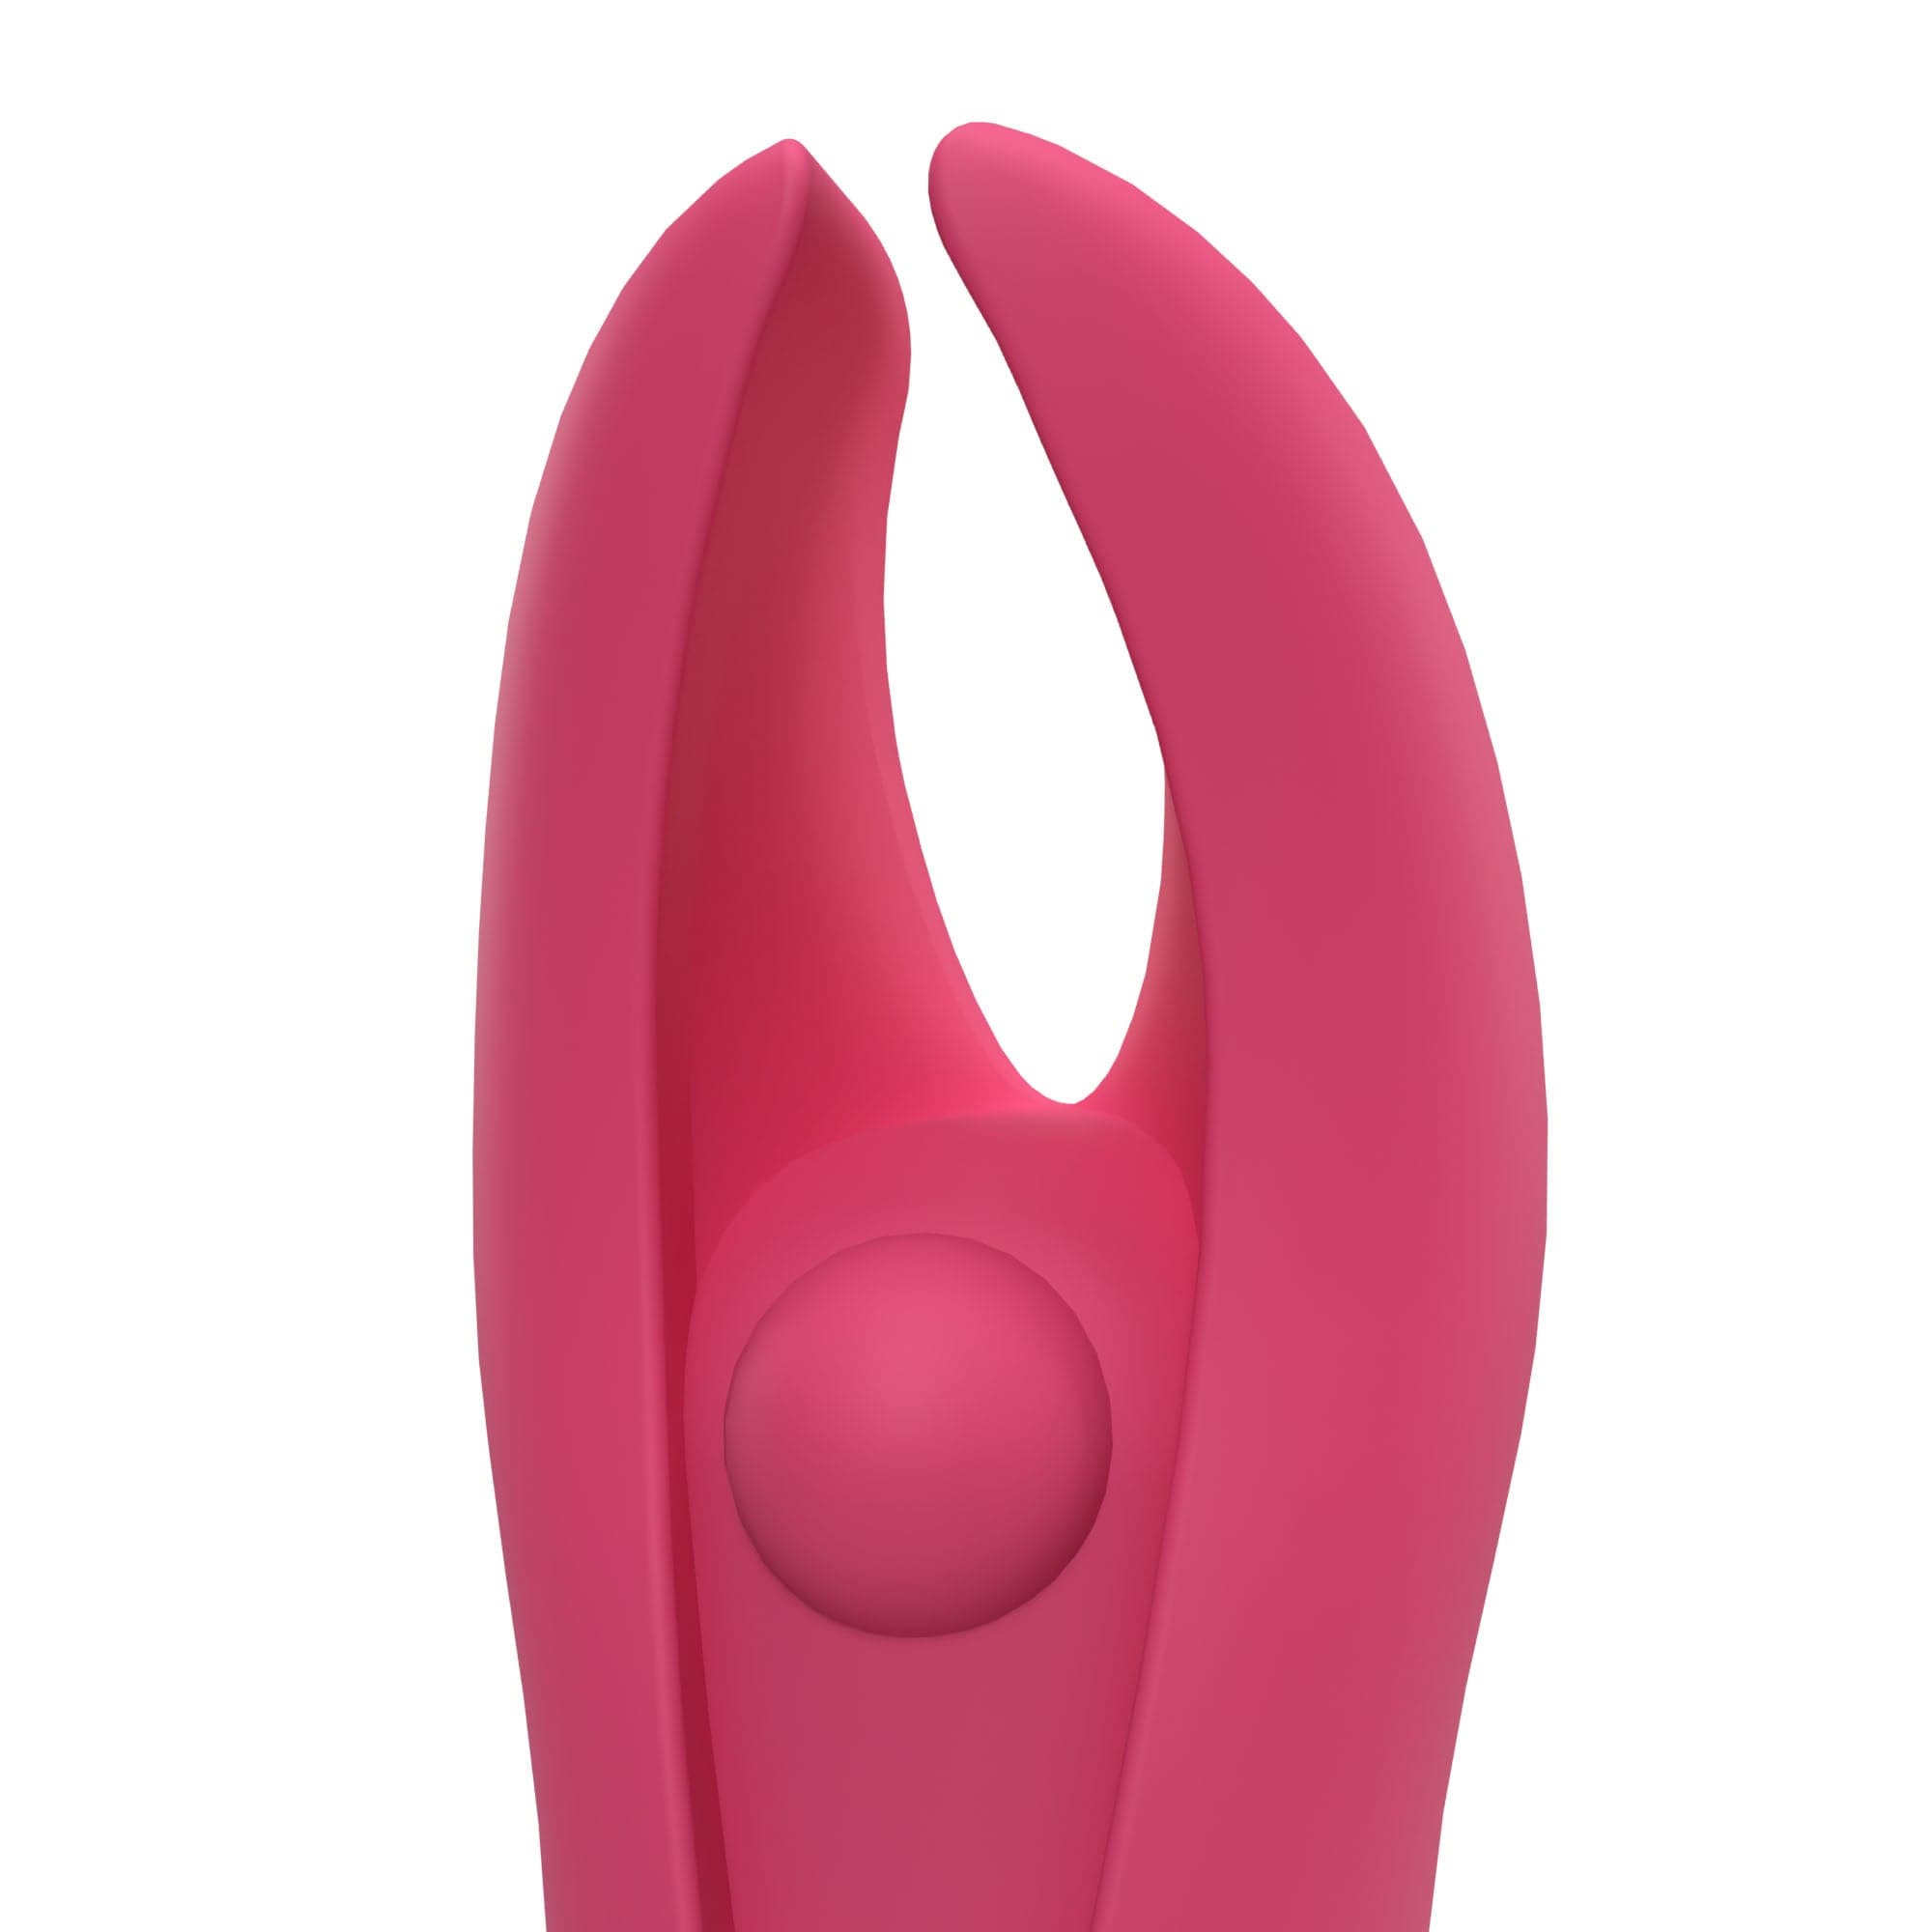 internal vaginal vibrator, pink vaginal vibrator